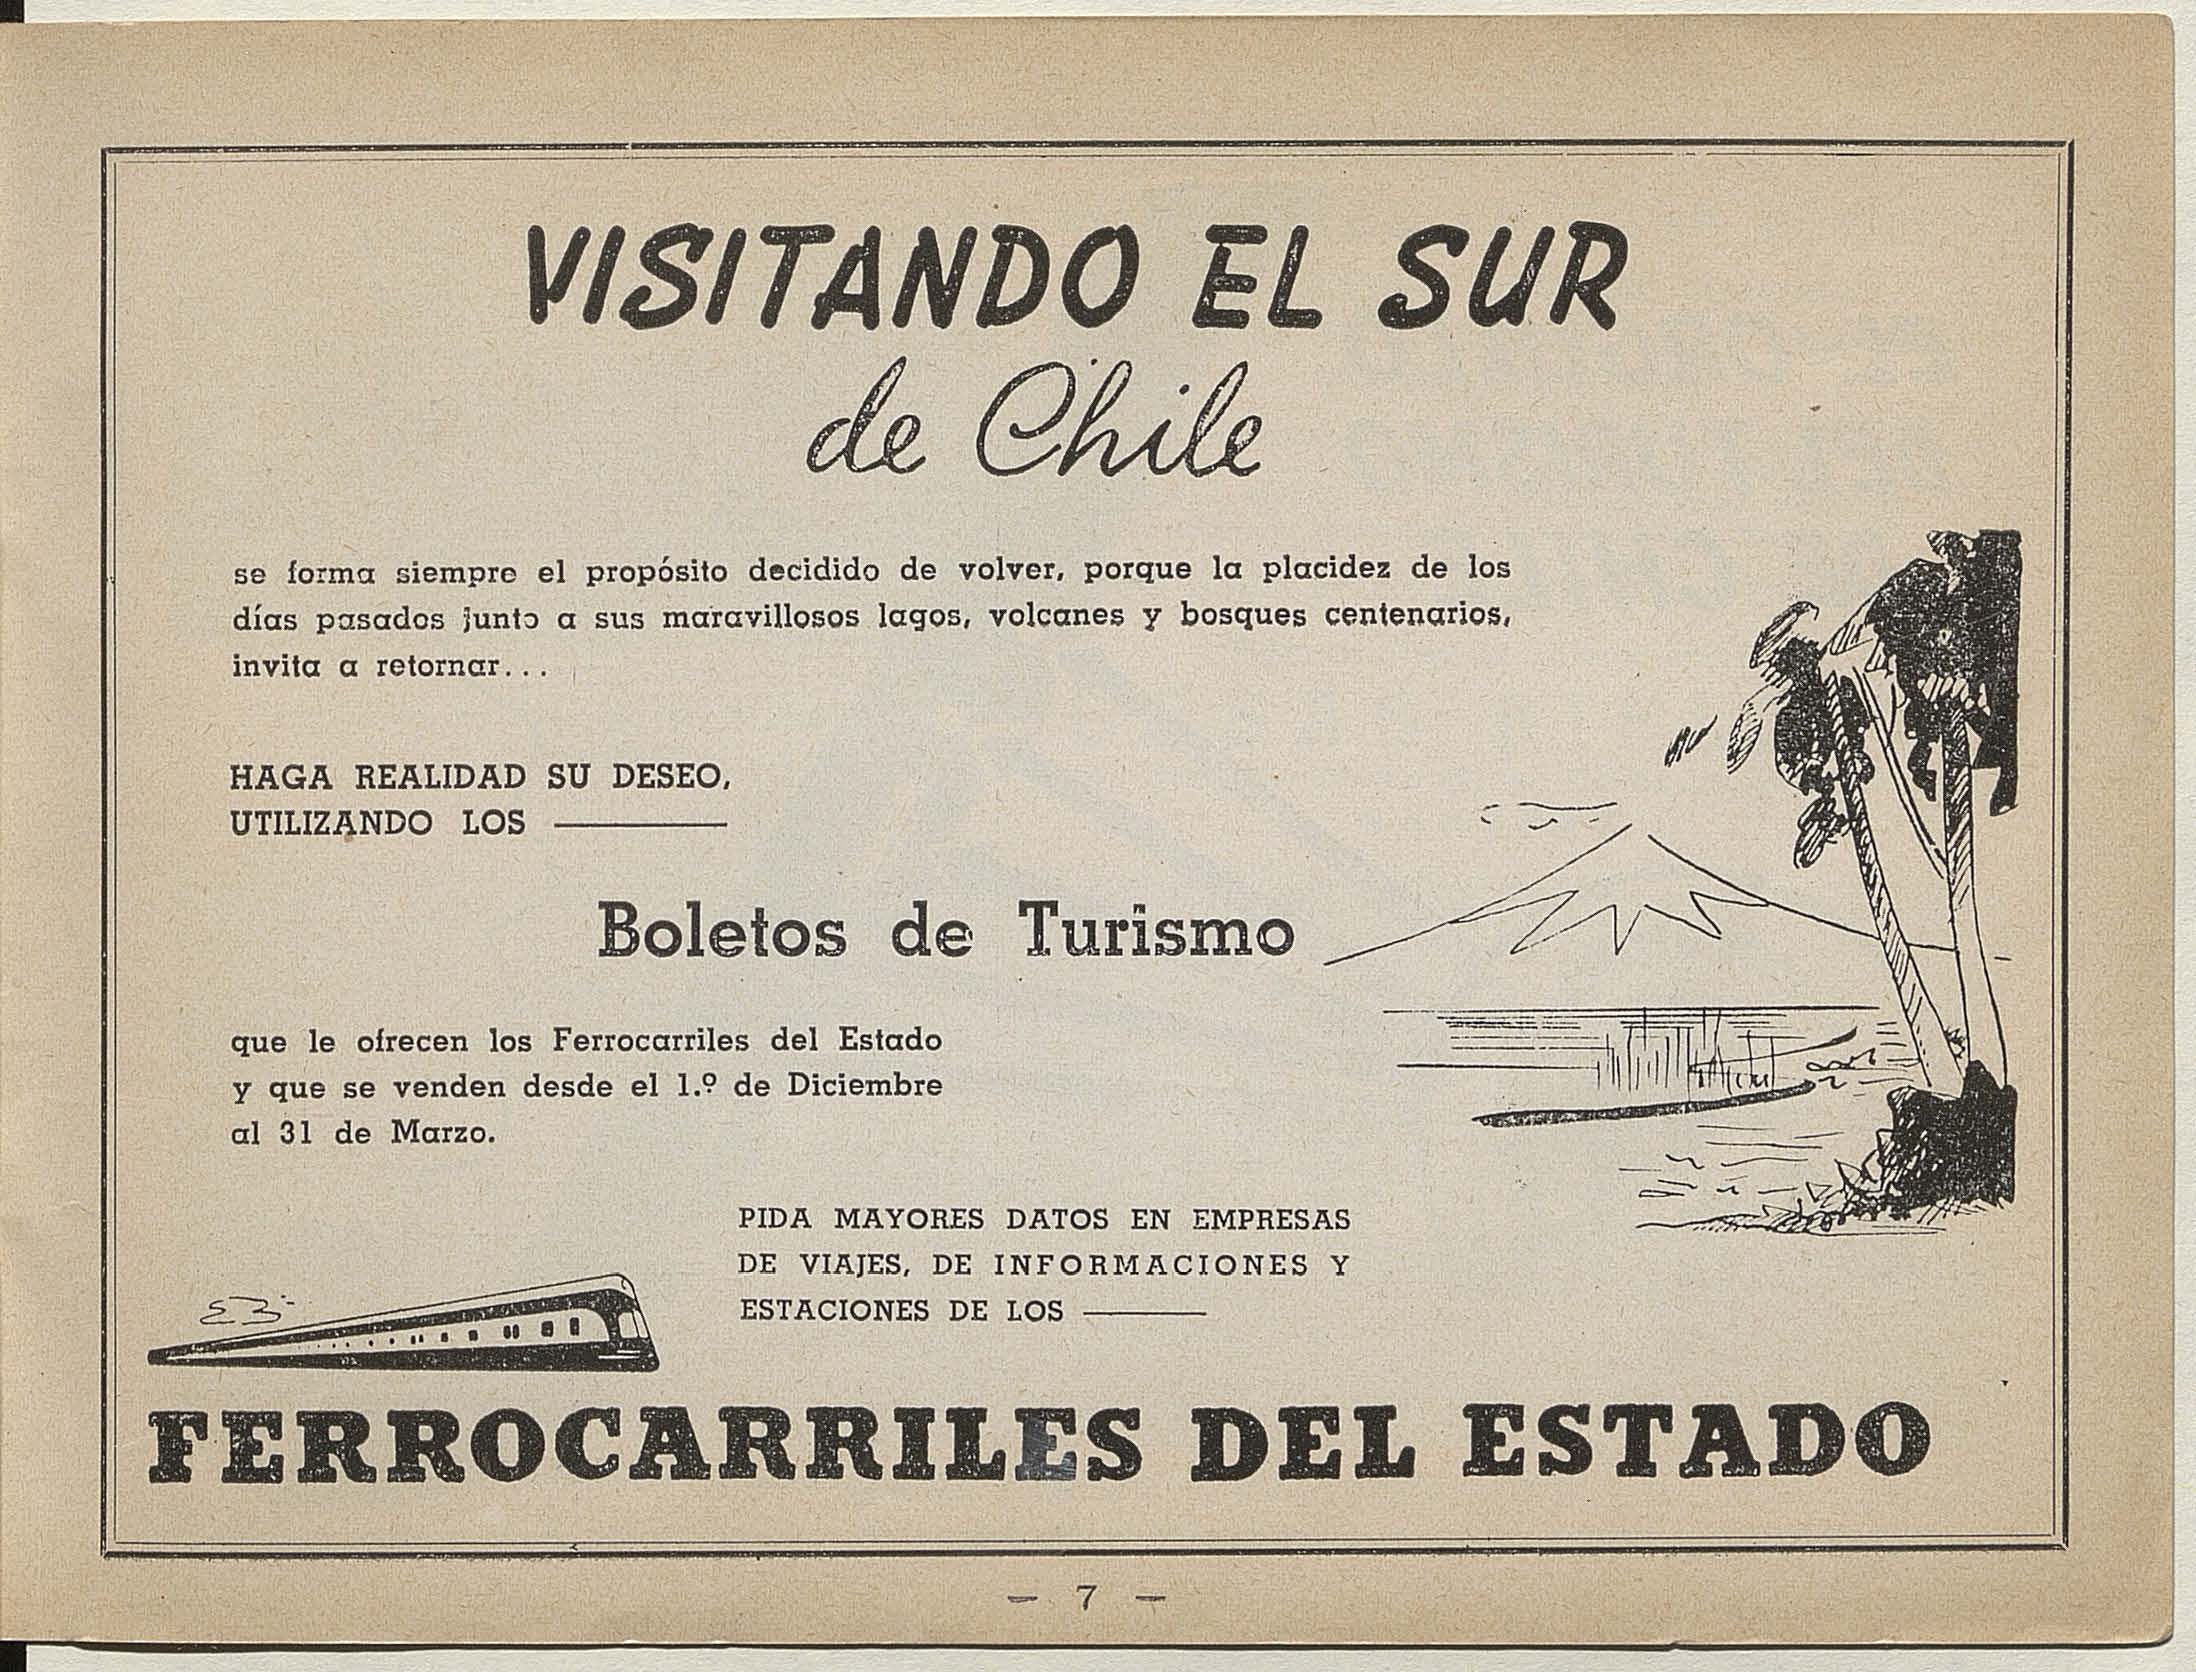 Publicidad del a Empresa de Ferrocarriles del Estado sobre el sur de Chile